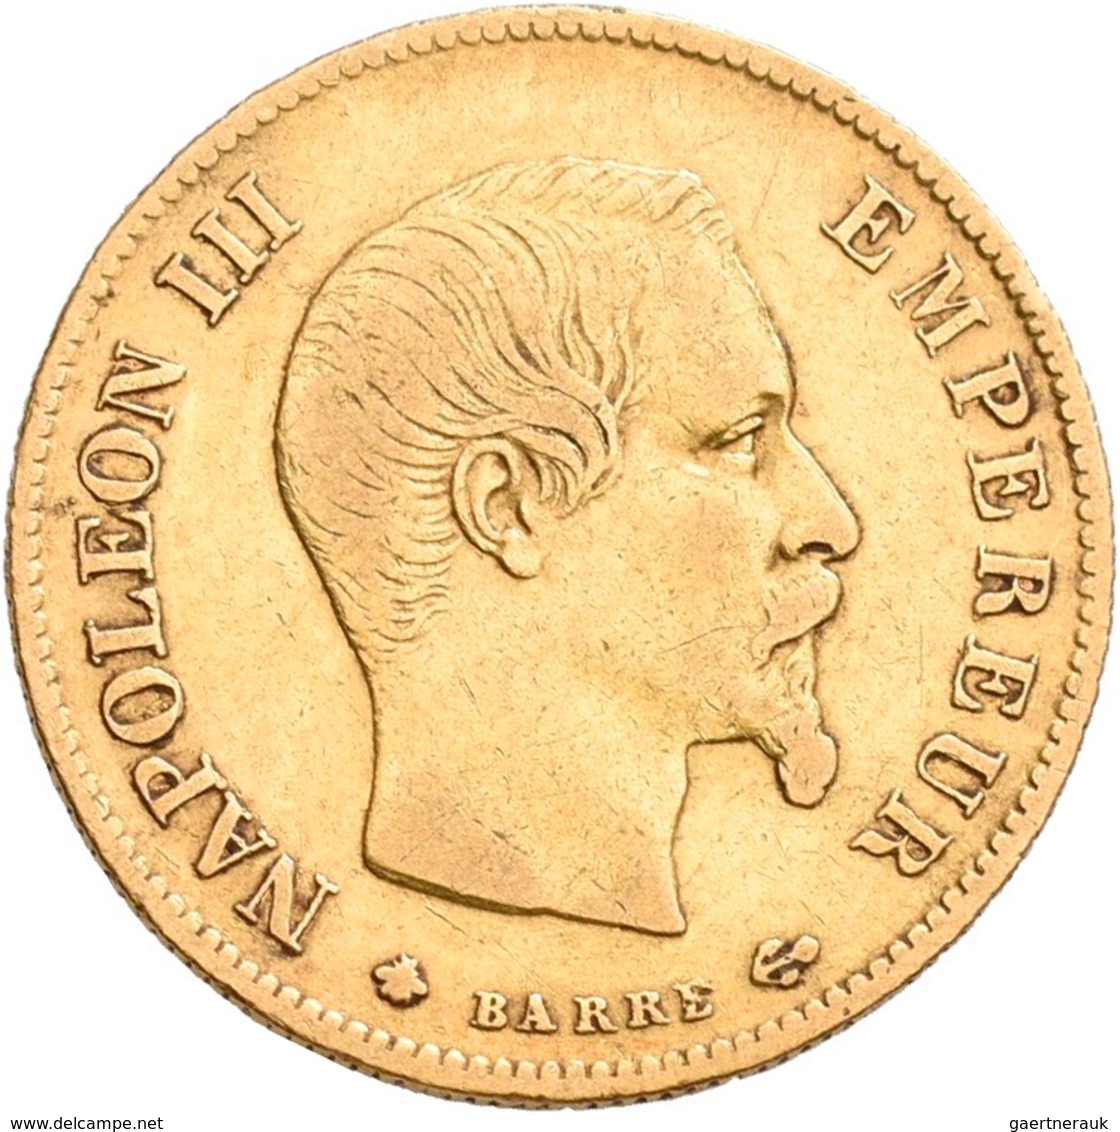 Frankreich - Anlagegold: Napoleon III. 1852-1870: Lot 7 Goldmünzen: 2 x 5 Francs 1858 A, 1860 A; 1 x